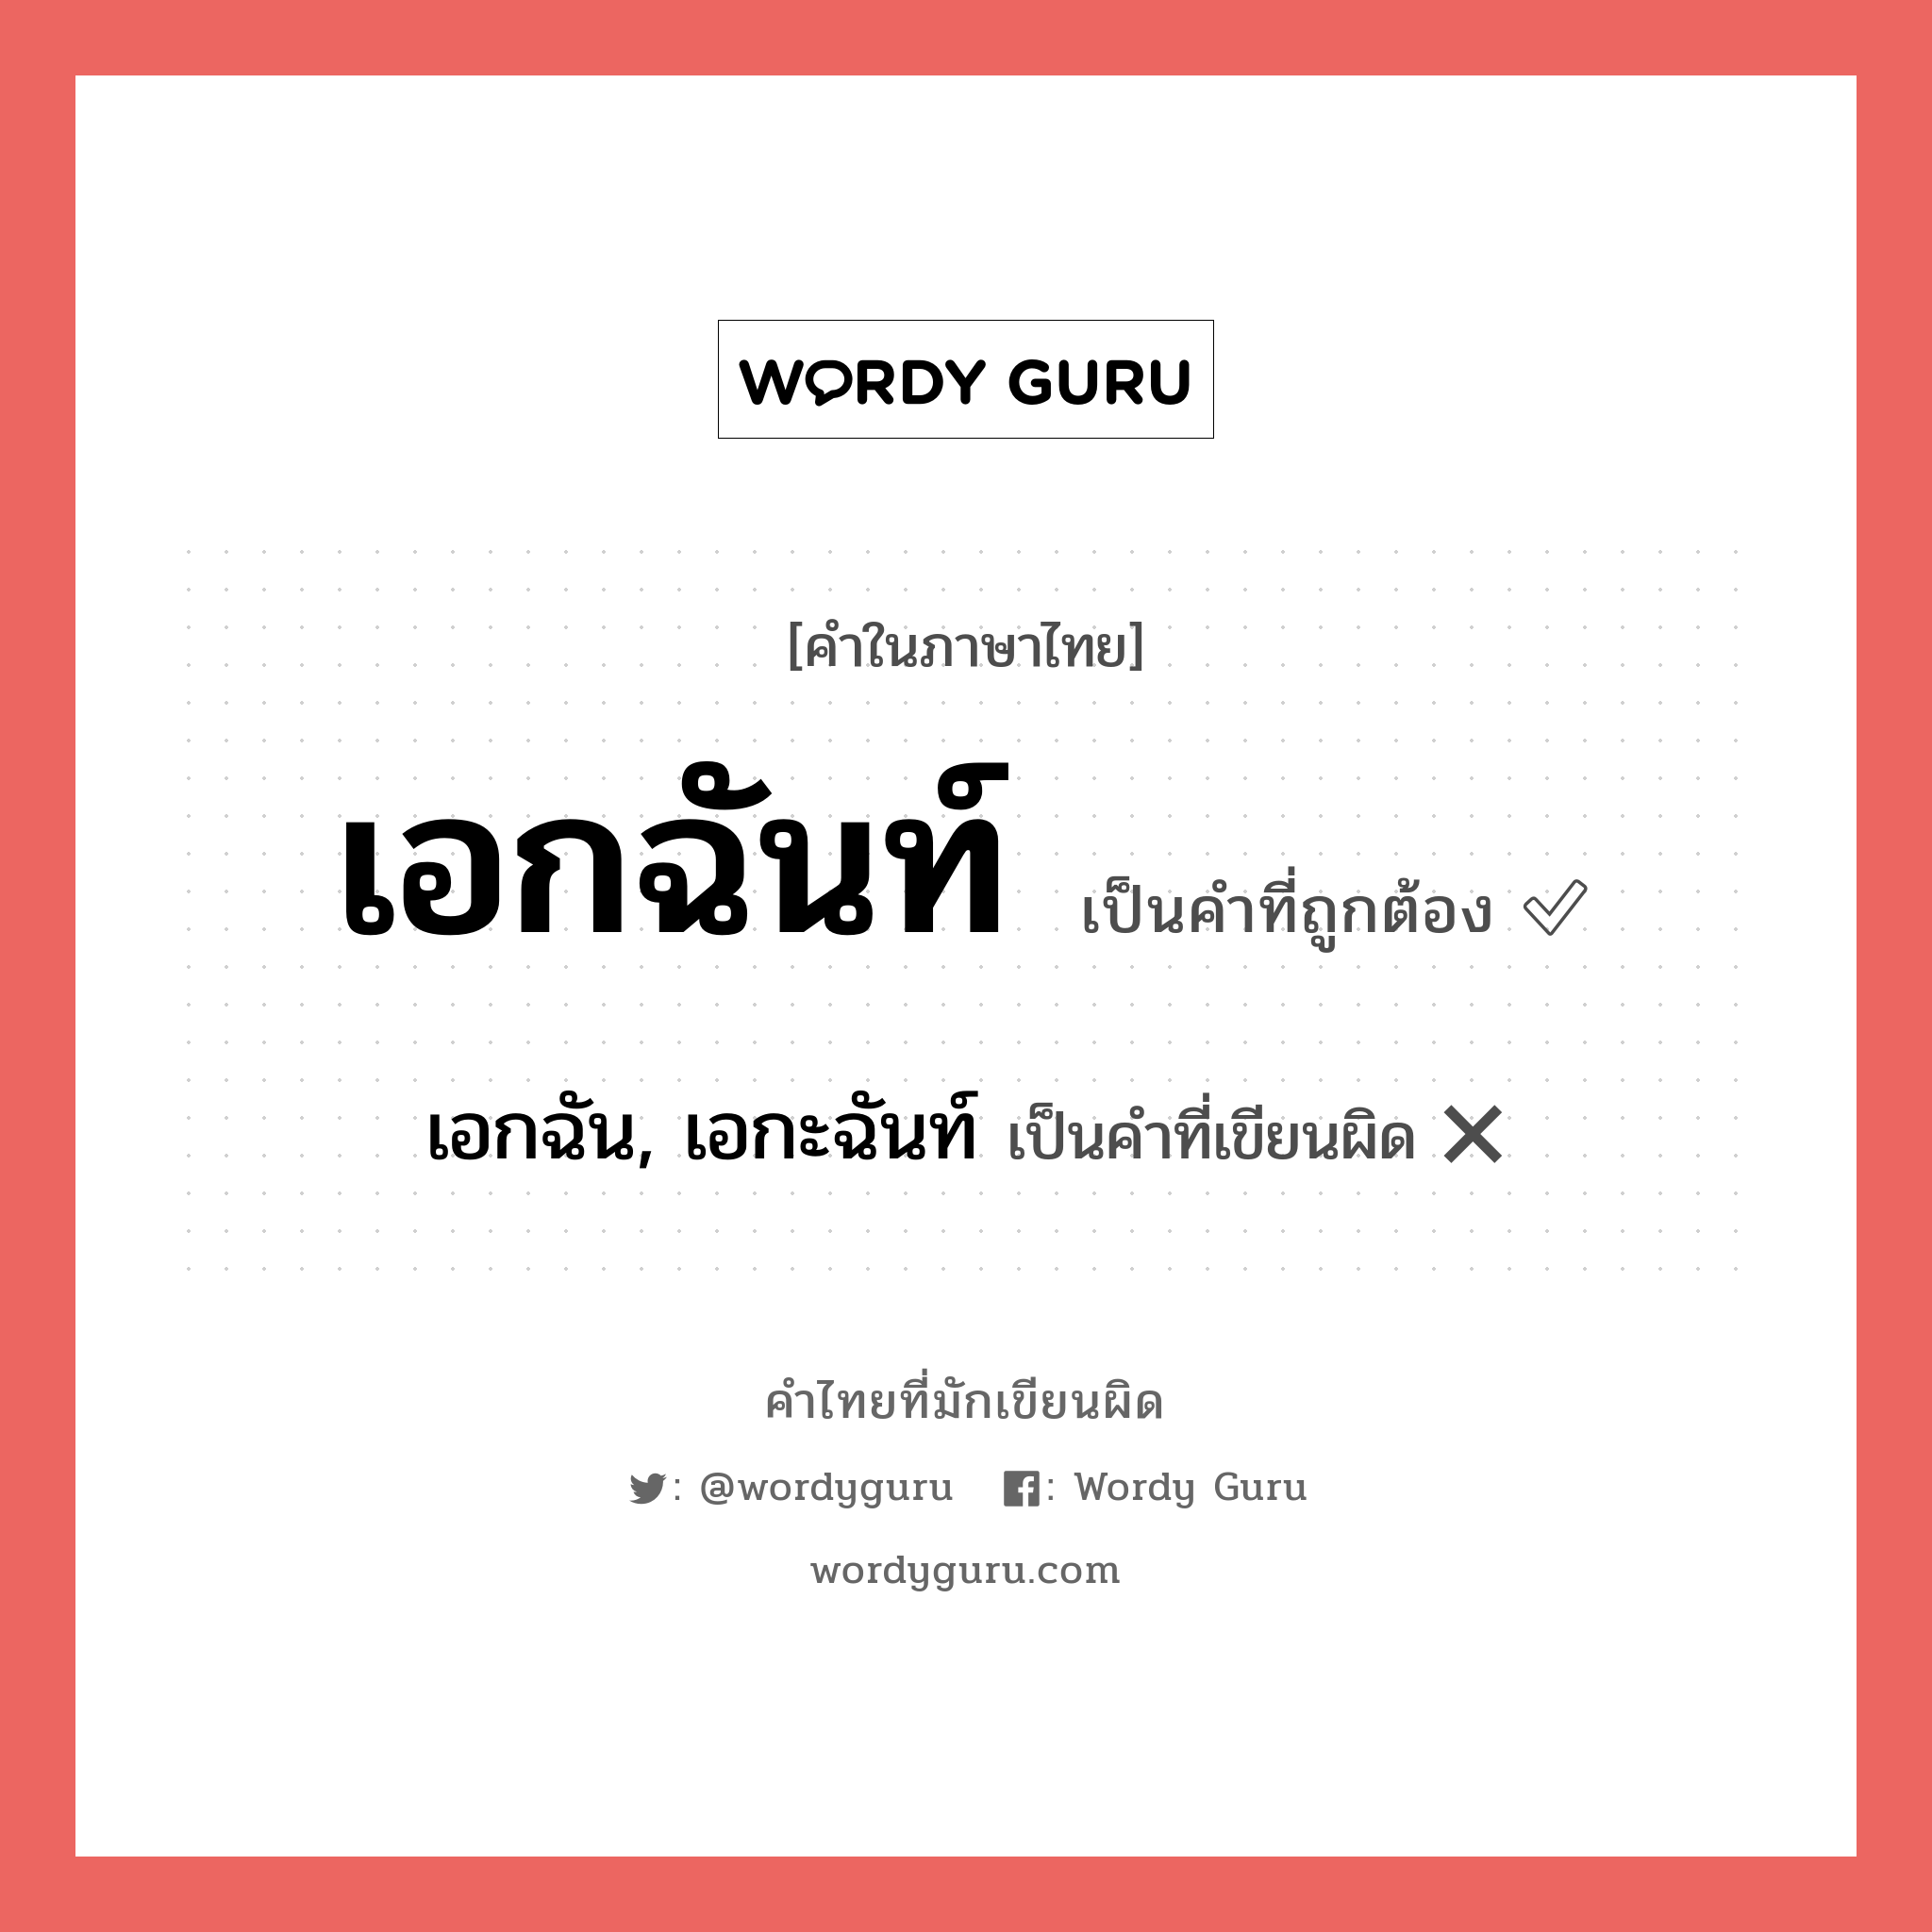 เอกฉัน, เอกะฉันท์ หรือ เอกฉันท์ คำไหนเขียนถูก?, คำในภาษาไทยที่มักเขียนผิด เอกฉัน, เอกะฉันท์ คำที่ผิด ❌ เอกฉันท์